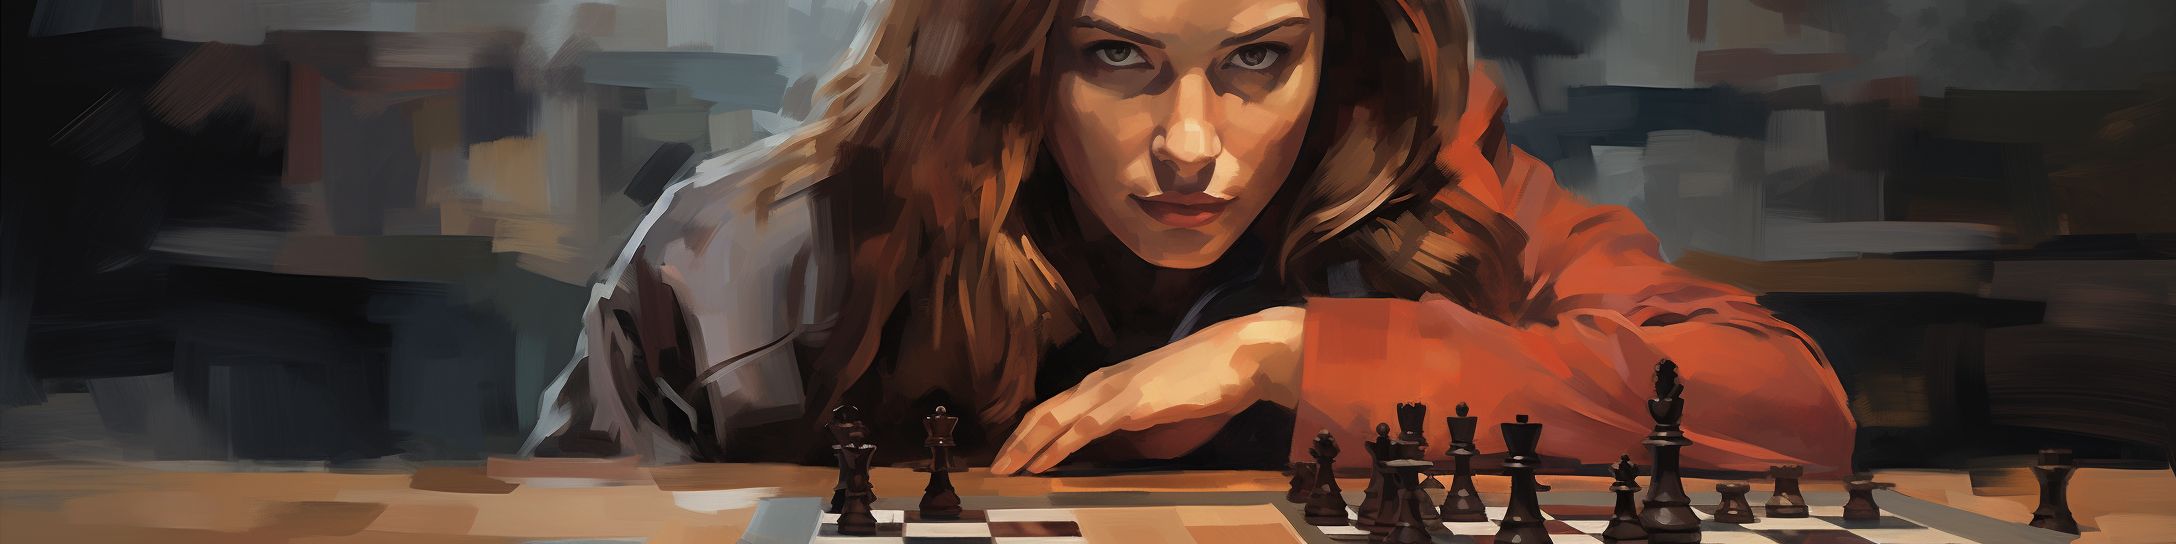 L'empreinte de Judit Polgar sur l'univers des échecs